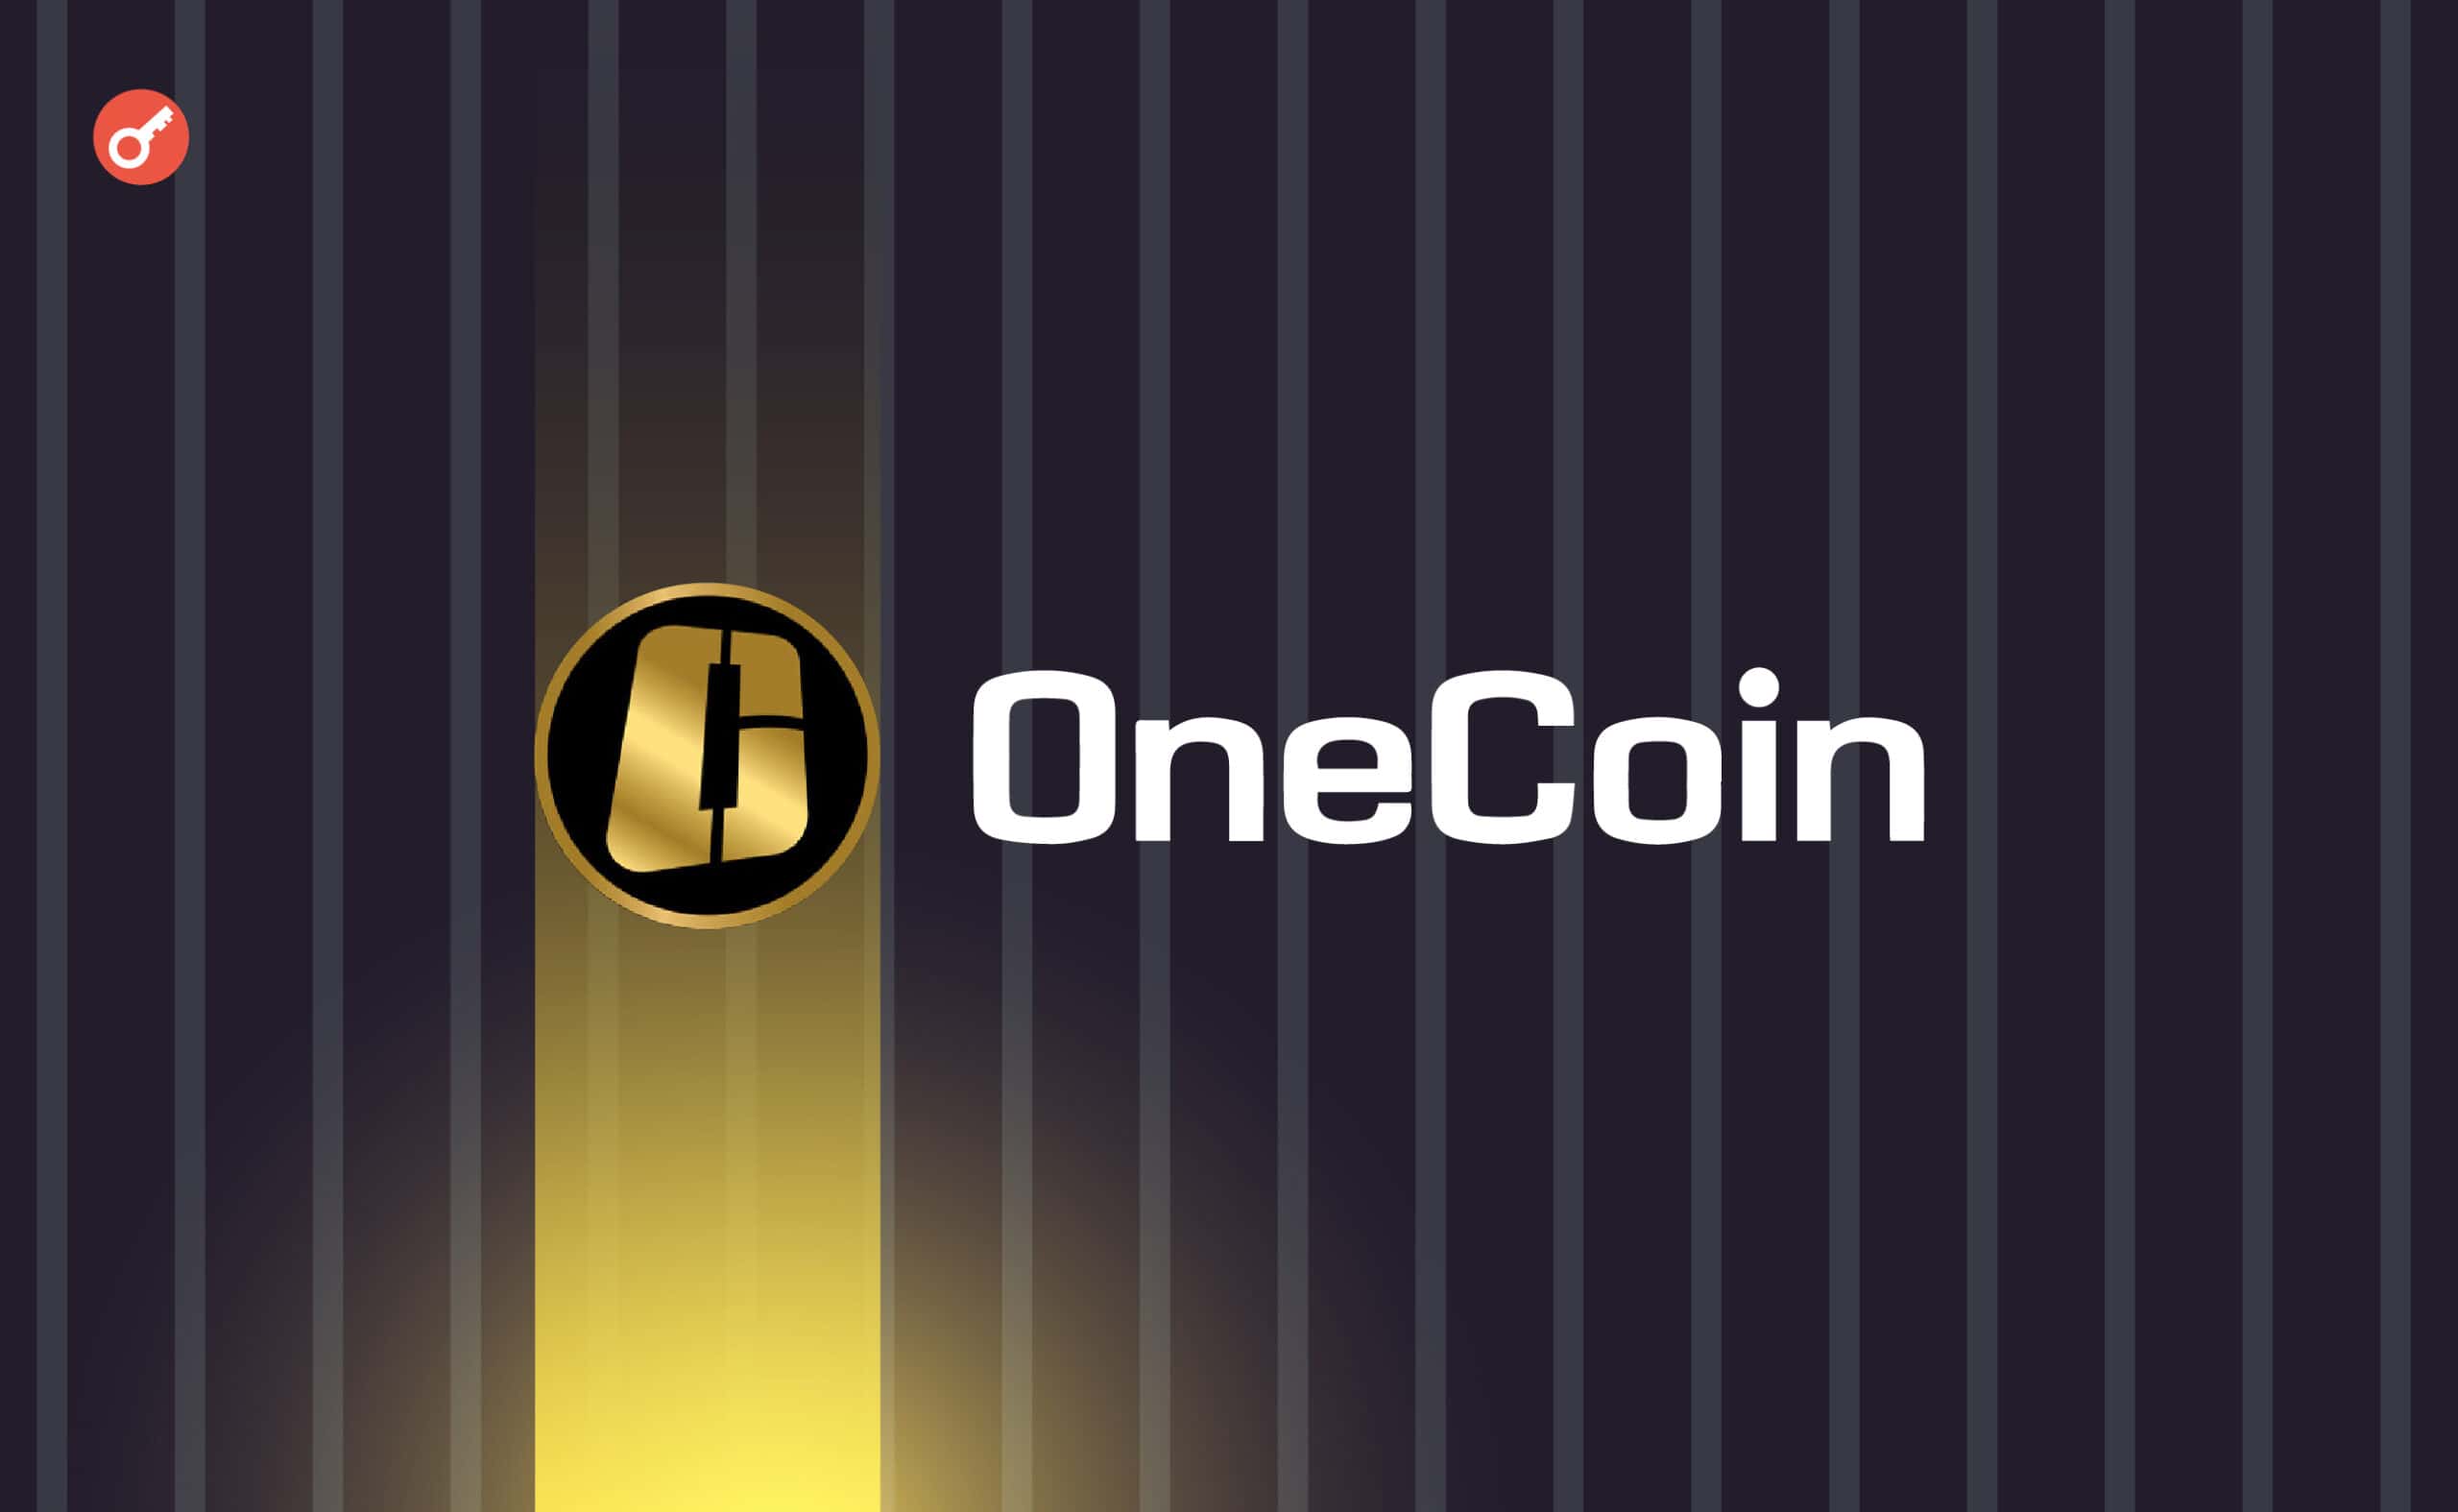 Соучредителя схемы OneCoin приговорили к 20 годам лишения свободы. Заглавный коллаж новости.